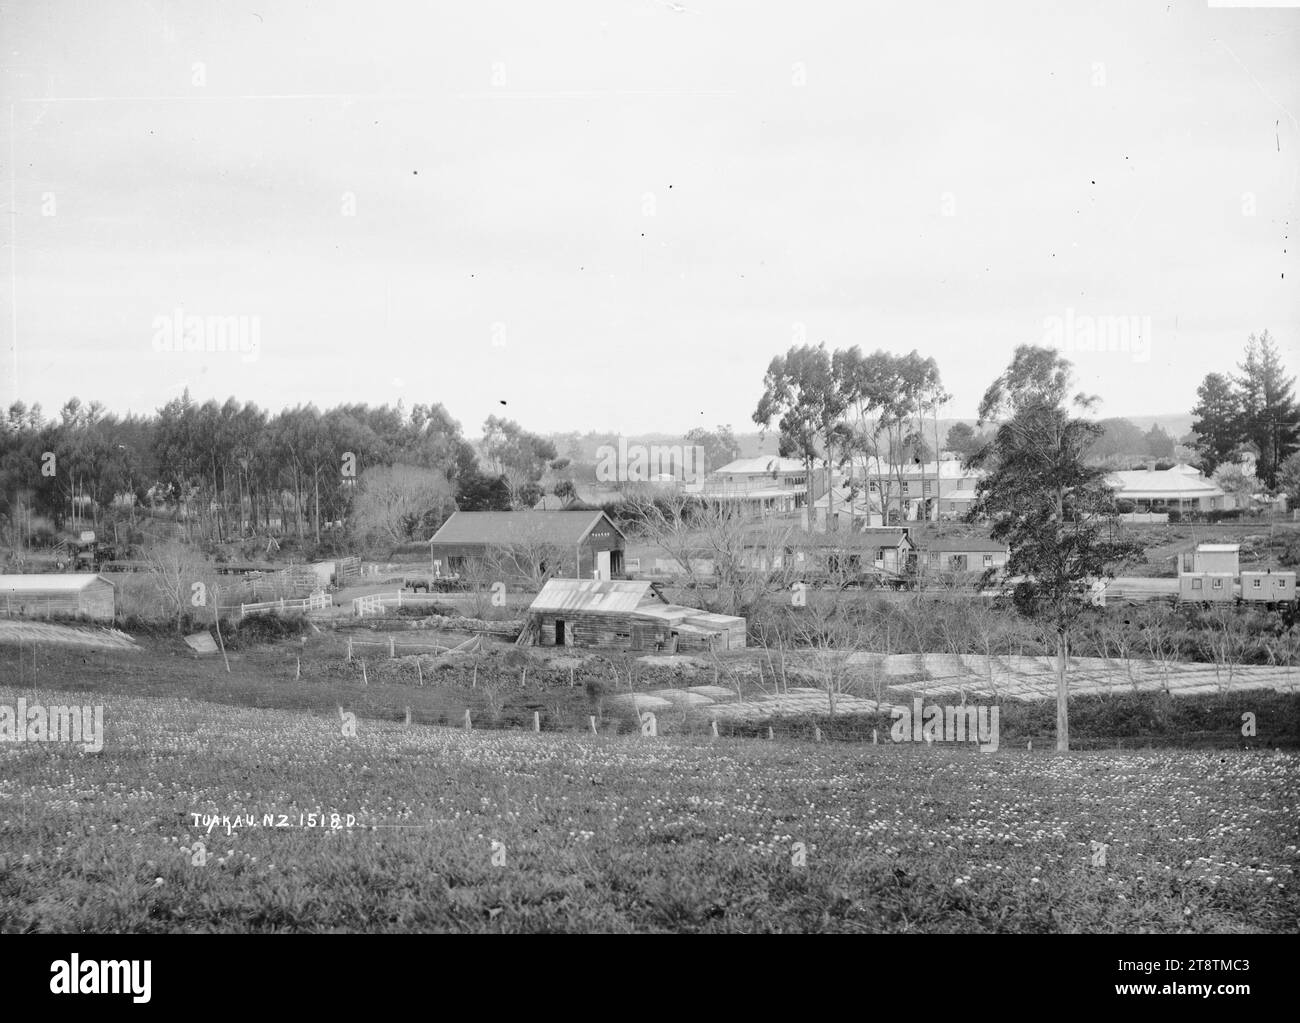 Tuakau Township, Tuakau Township, fotografiert zwischen 1910 und 1930. Im Vordergrund ist die Flachsfaser zum Trocknen und Bleichen ausgelegt. In der Mitte befindet sich der Bahnhof in mehreren Metern, mit dem Township dahinter Stockfoto